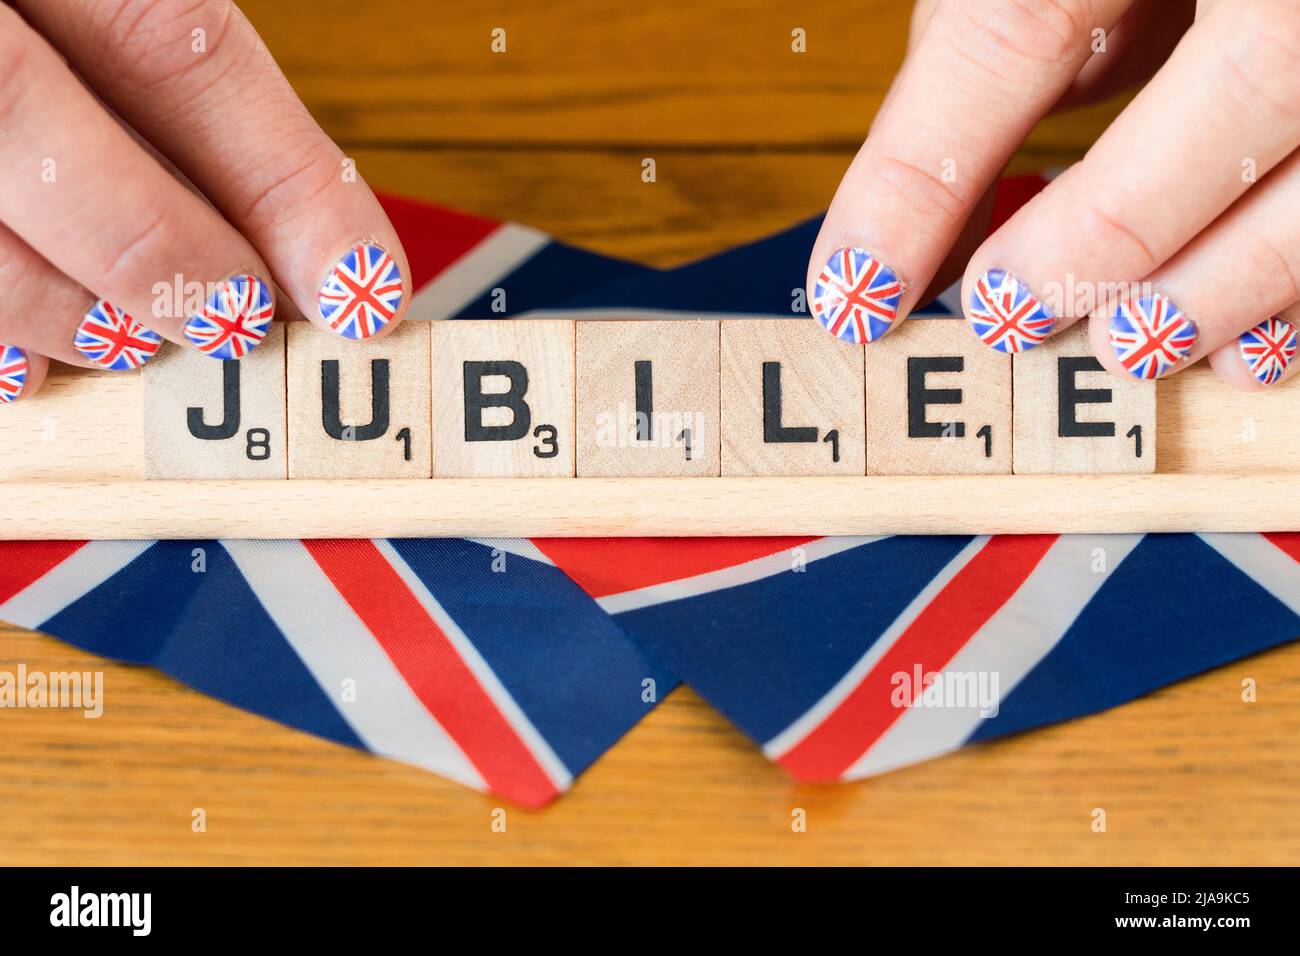 Doigts de femme avec ongles peints avec le drapeau britannique tenant des lettres scrabble qui sort Jubilé - le jubilé de platine de la Reine juin 2022 Banque D'Images